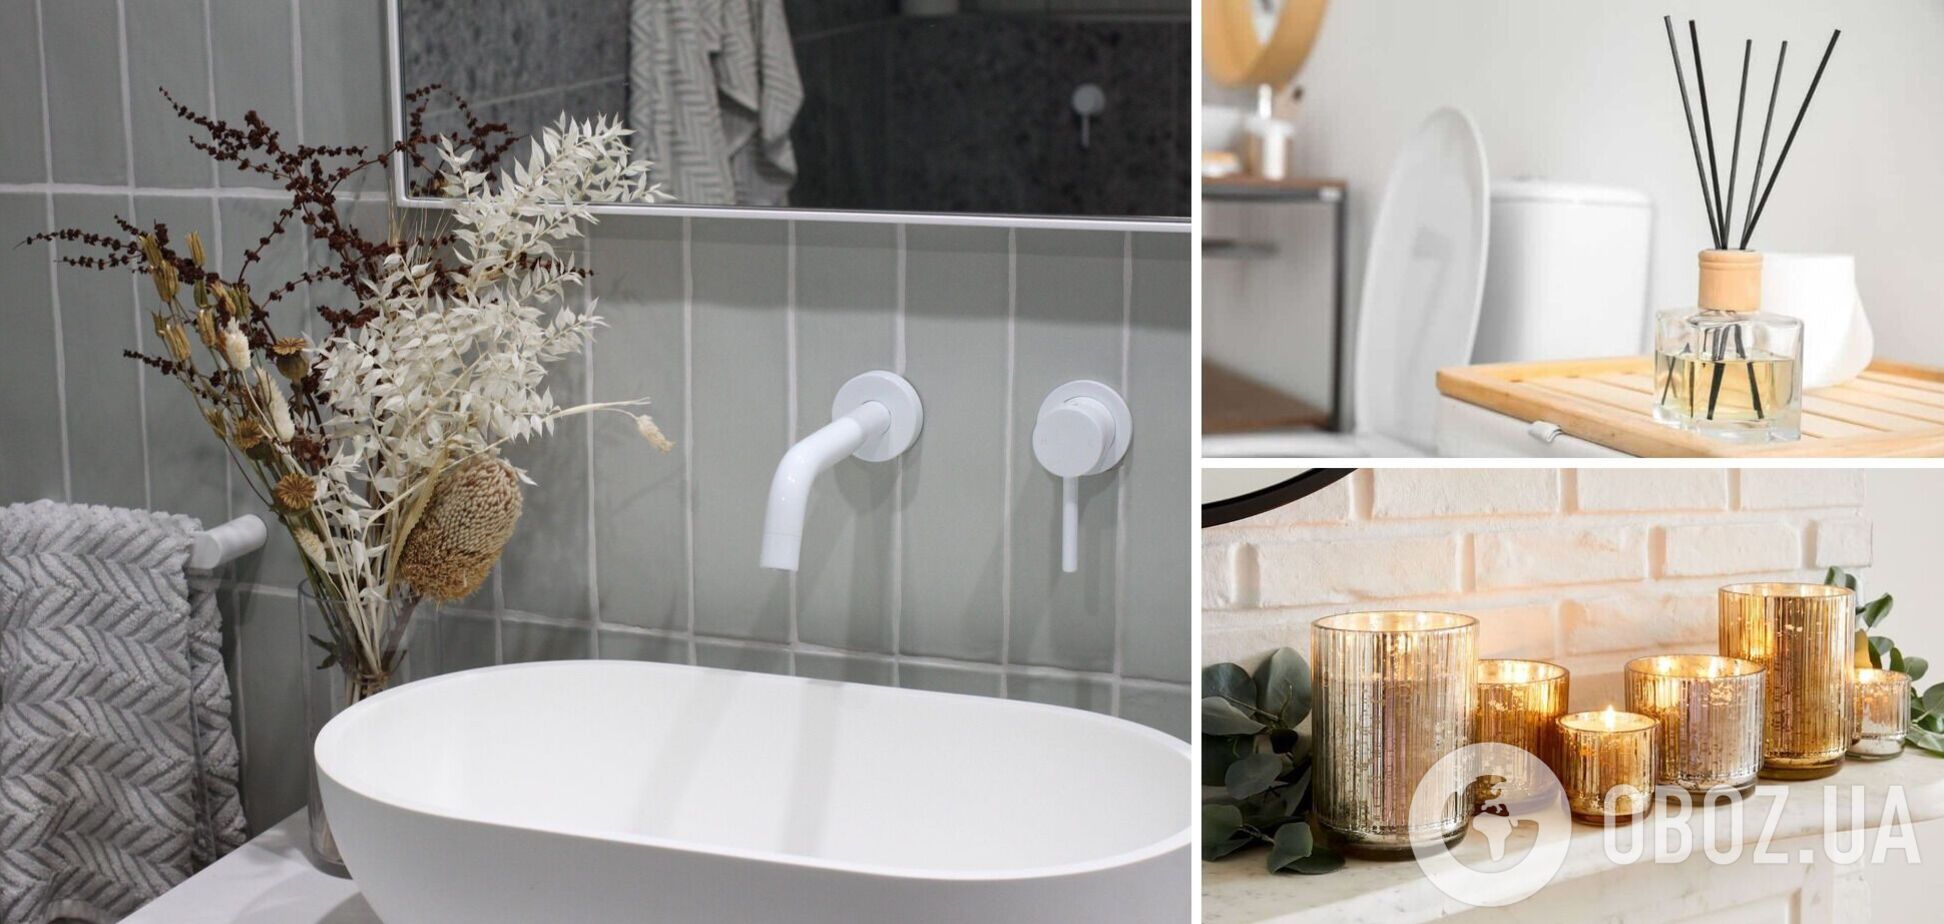 В ванной будет стоять невероятный аромат: как сделать, чтобы дома приятно пахло